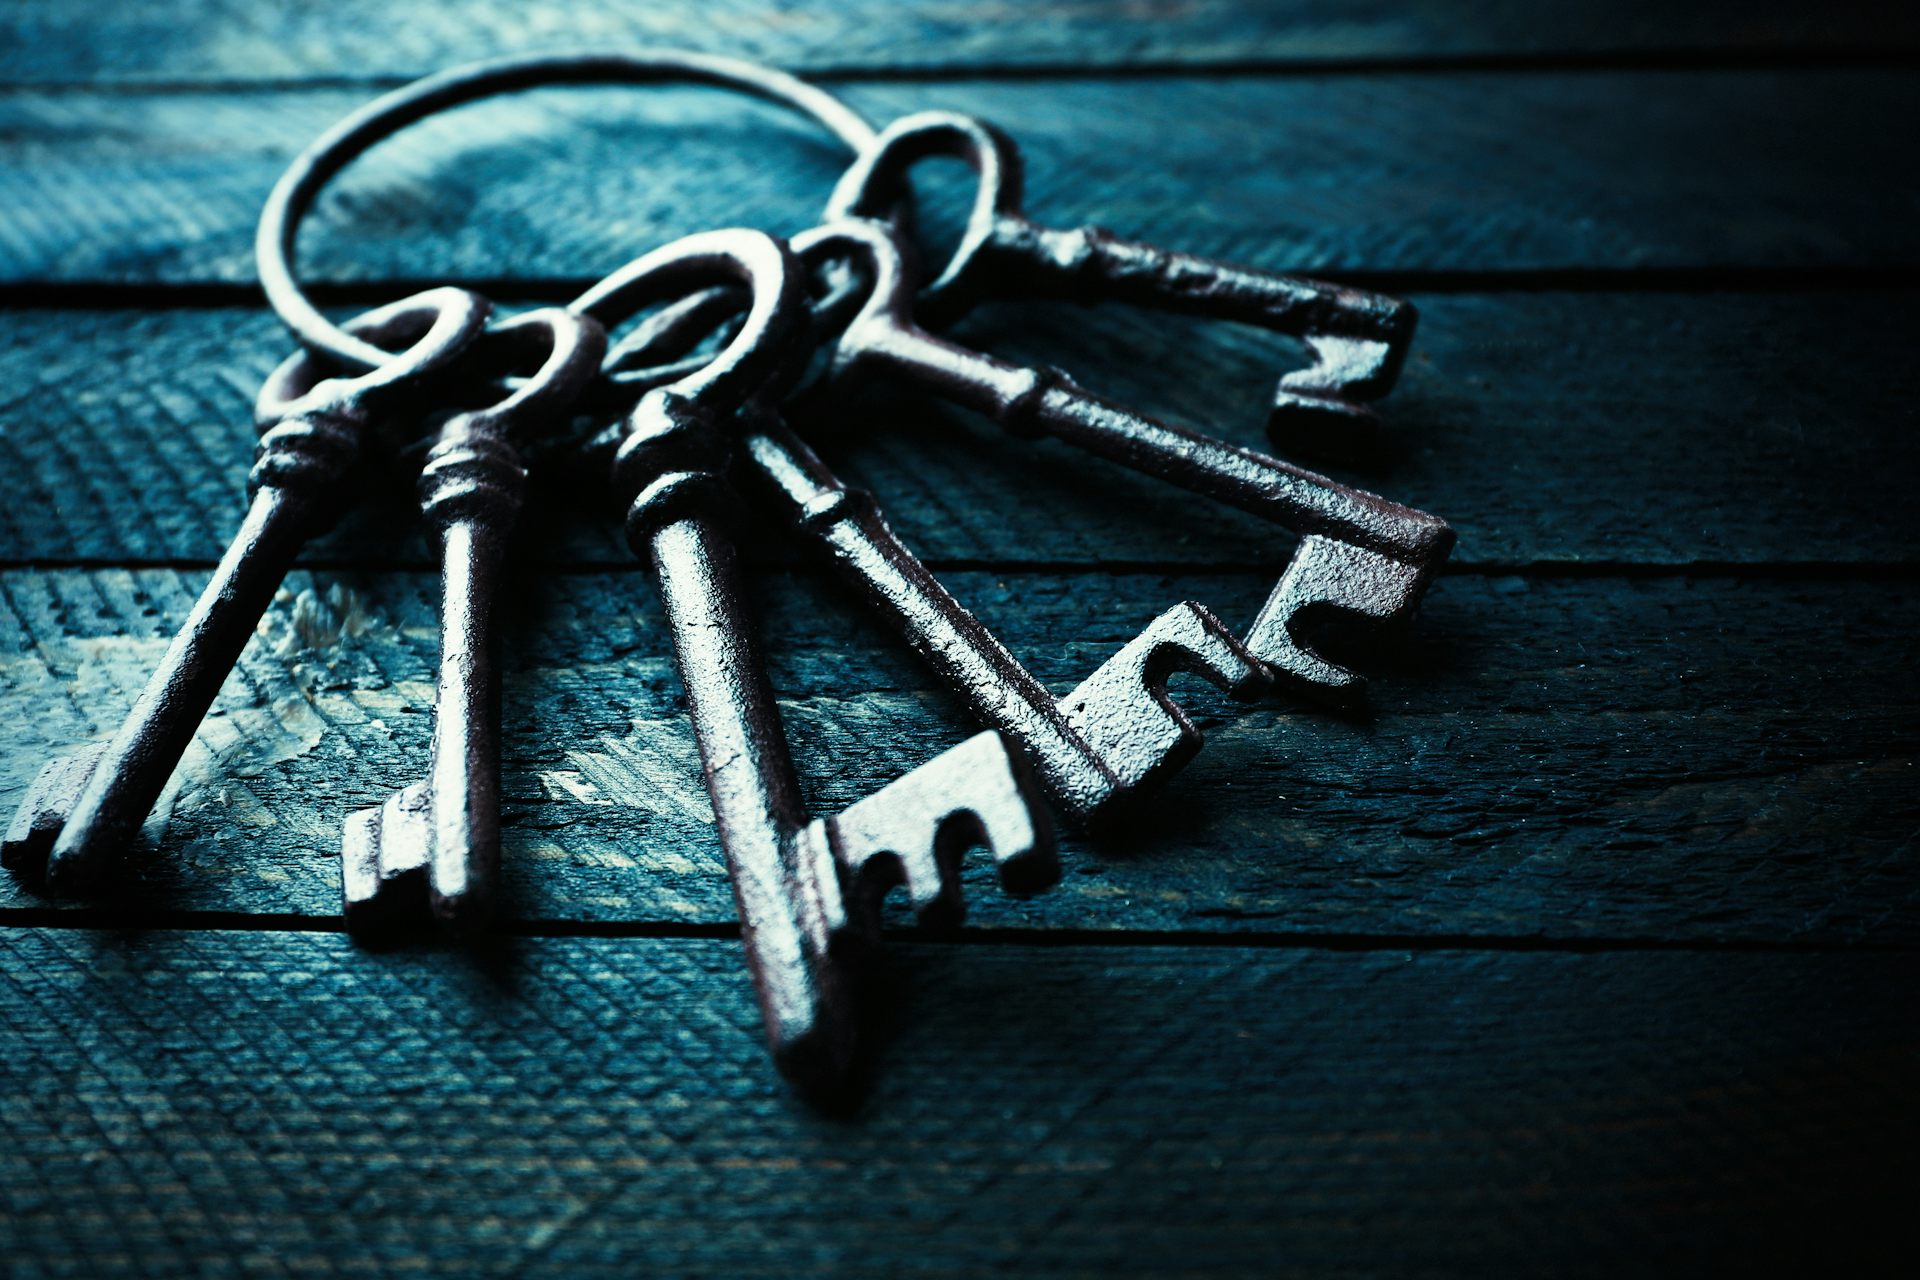 A ring of keys.